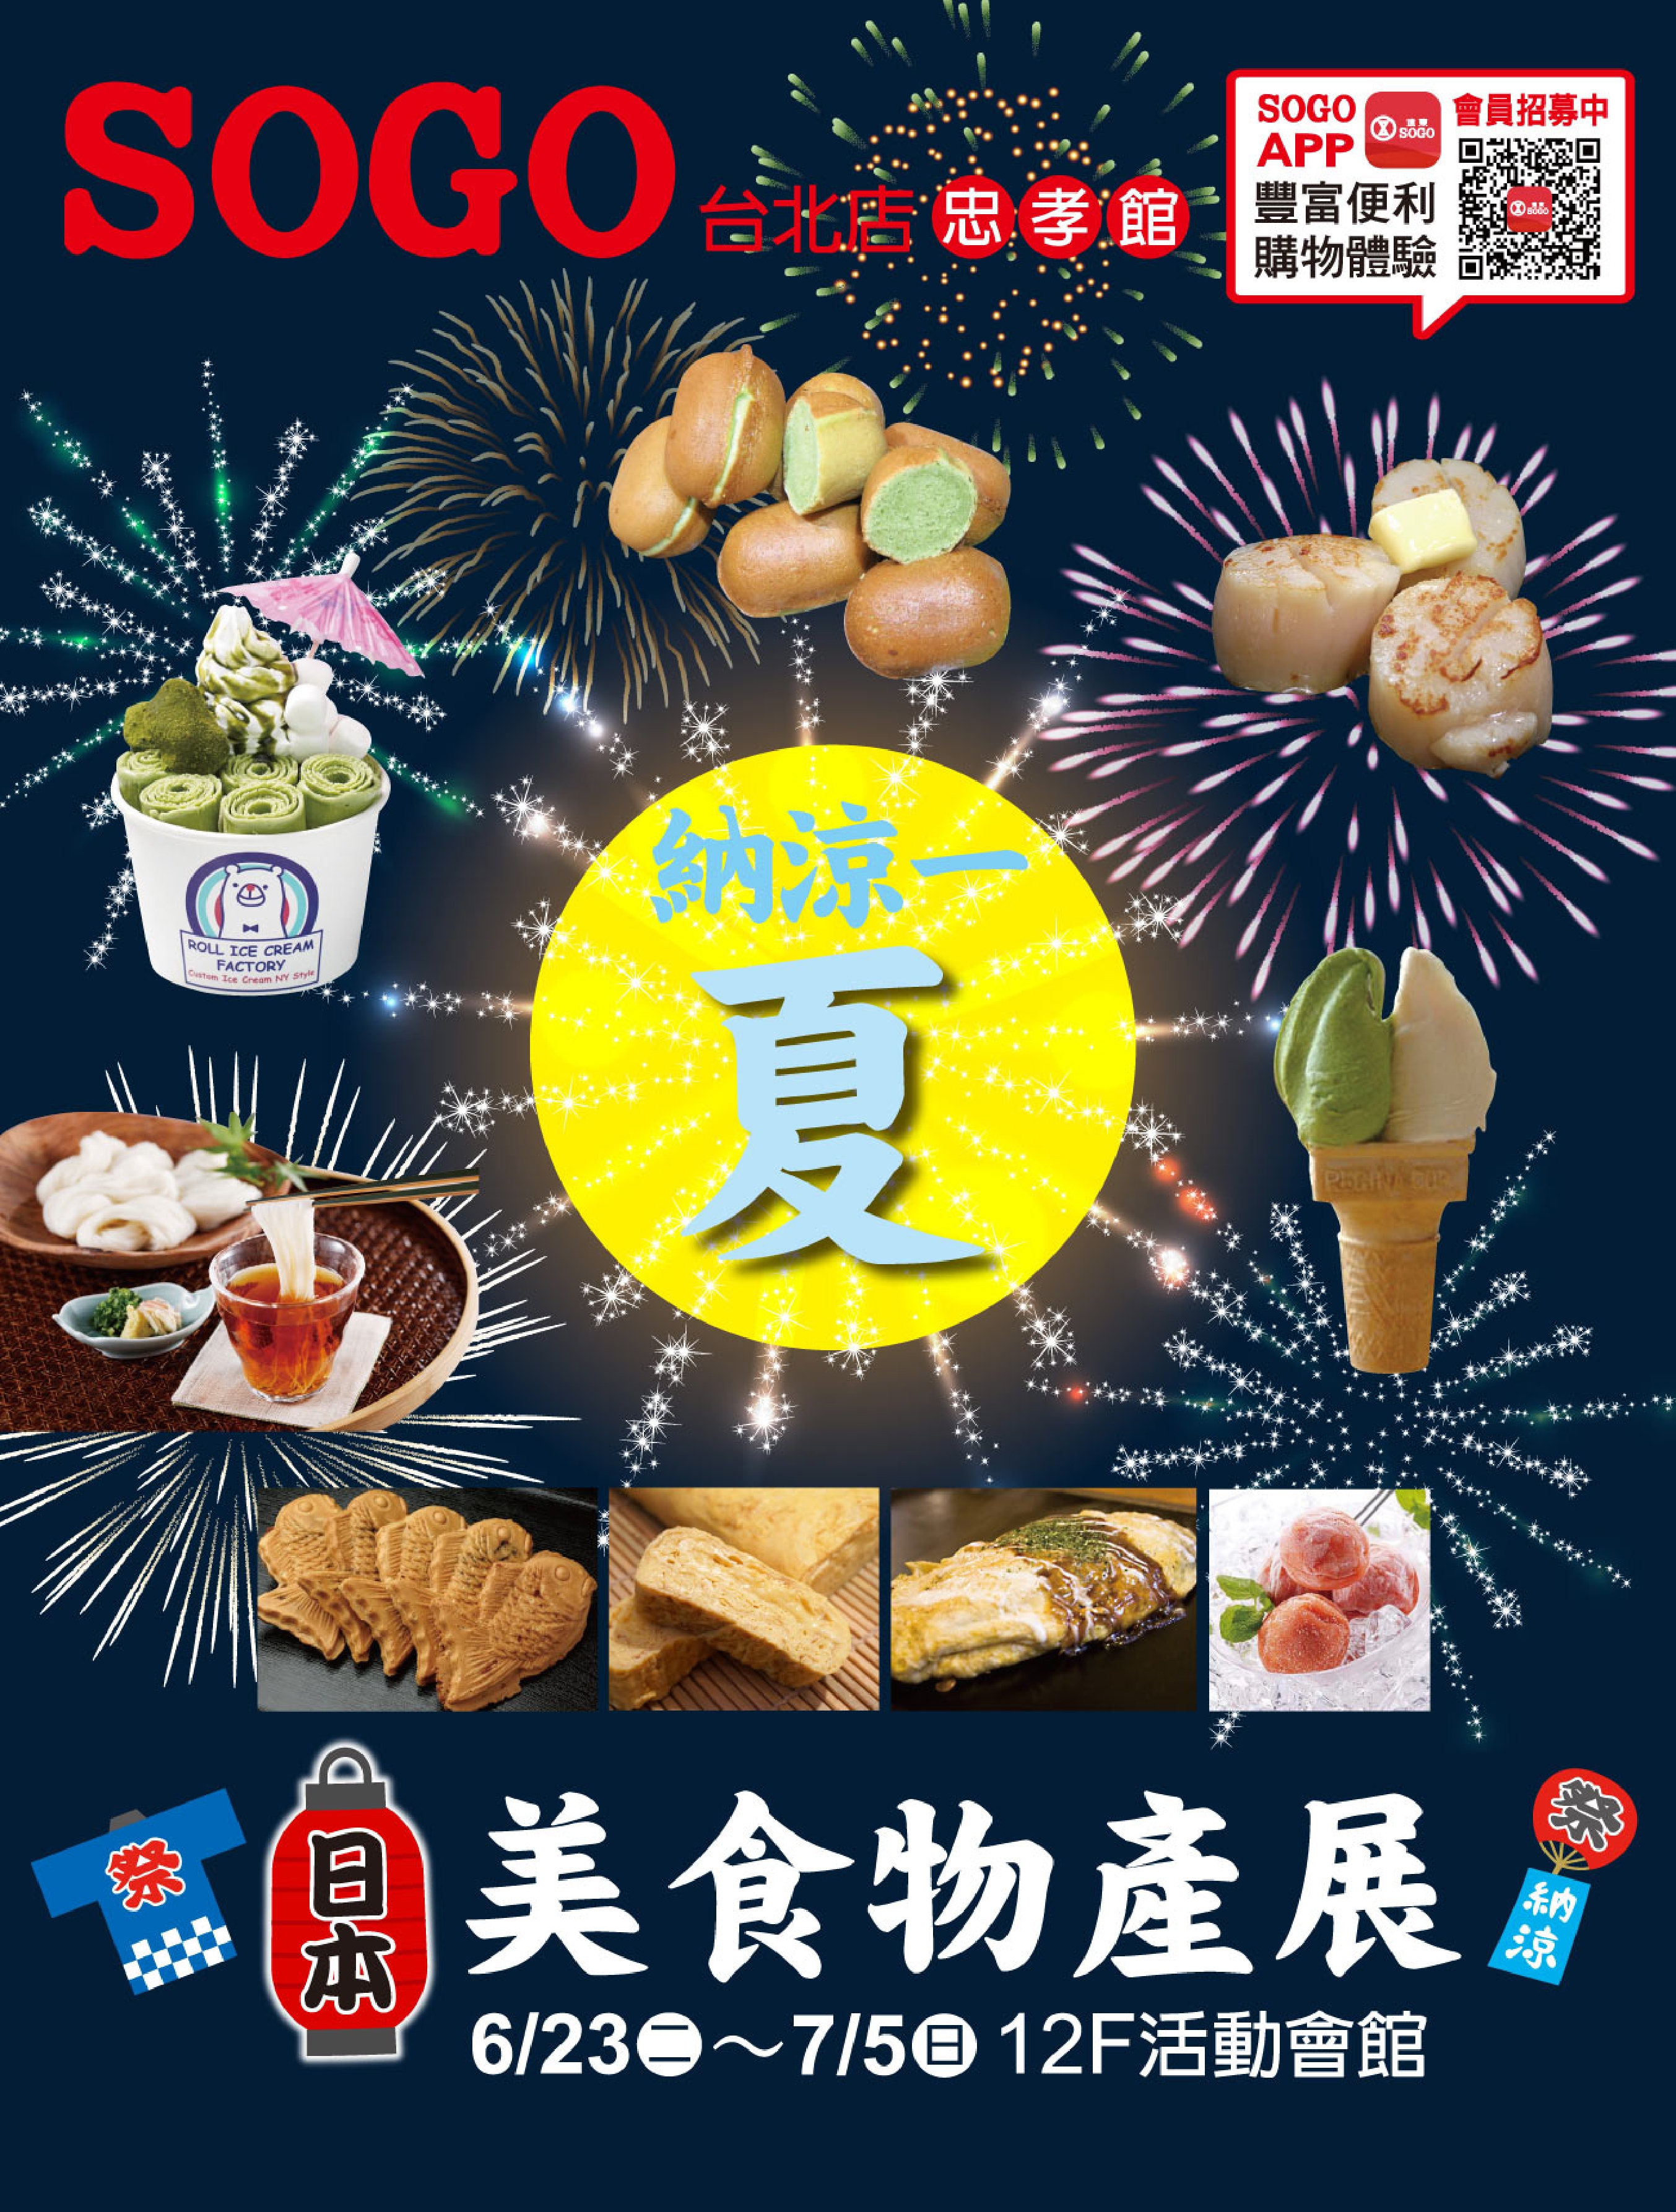 ロールアイスクリームファクトリー が6月23日から台北のsogo 美食物産展 に出店 日本的な カワイイ 文化を評価 されオファー 株式会社トレンドファクトリーのプレスリリース